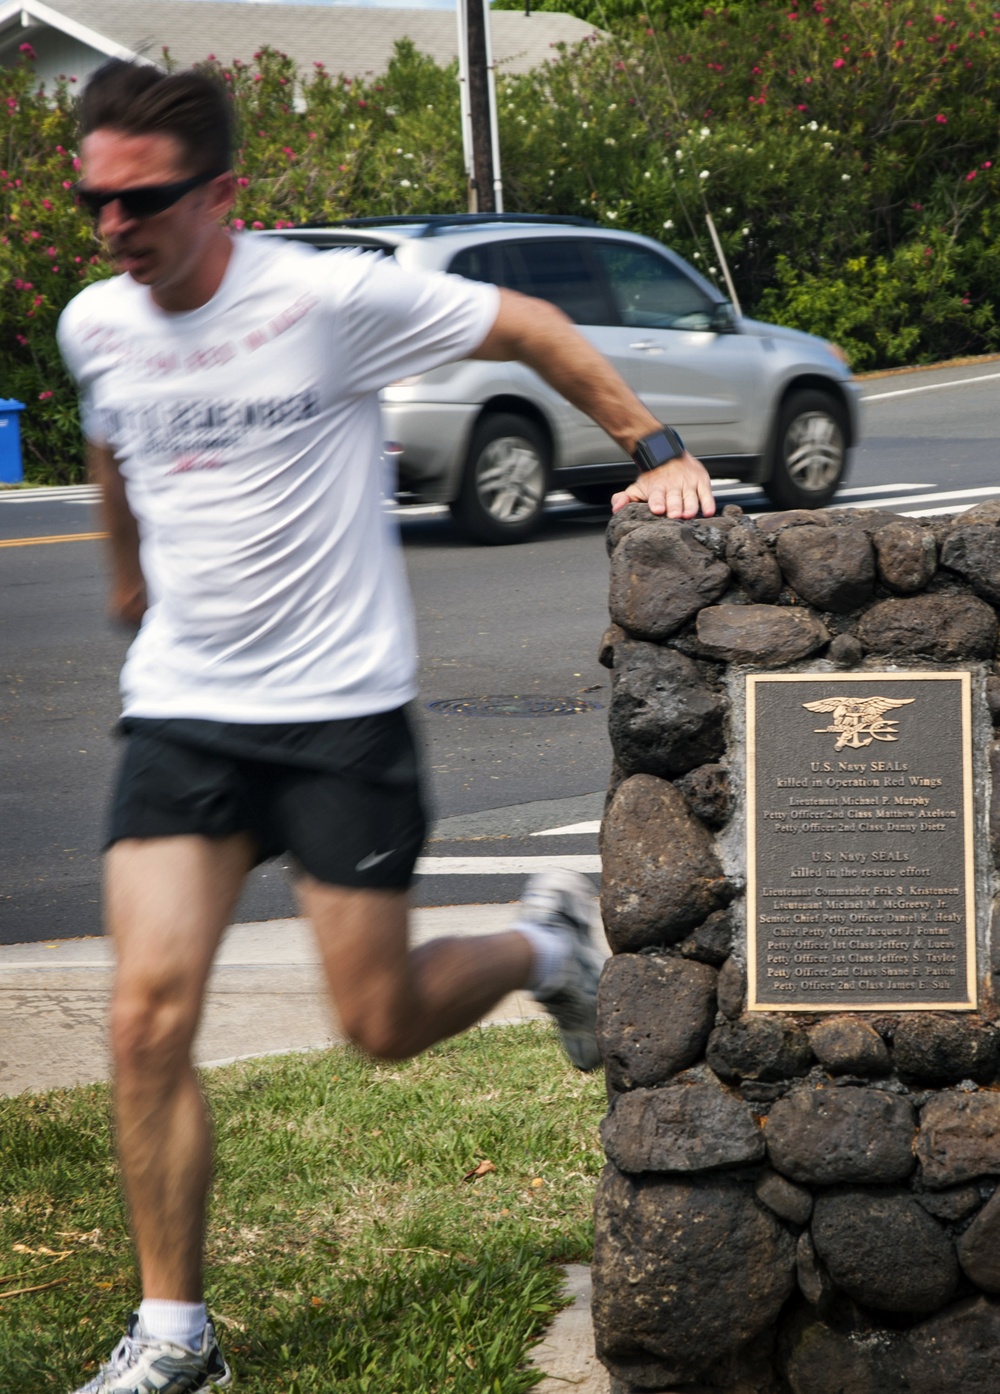 Operation Red Wings Medal of Honor Memorial Park - Park in East Honolulu